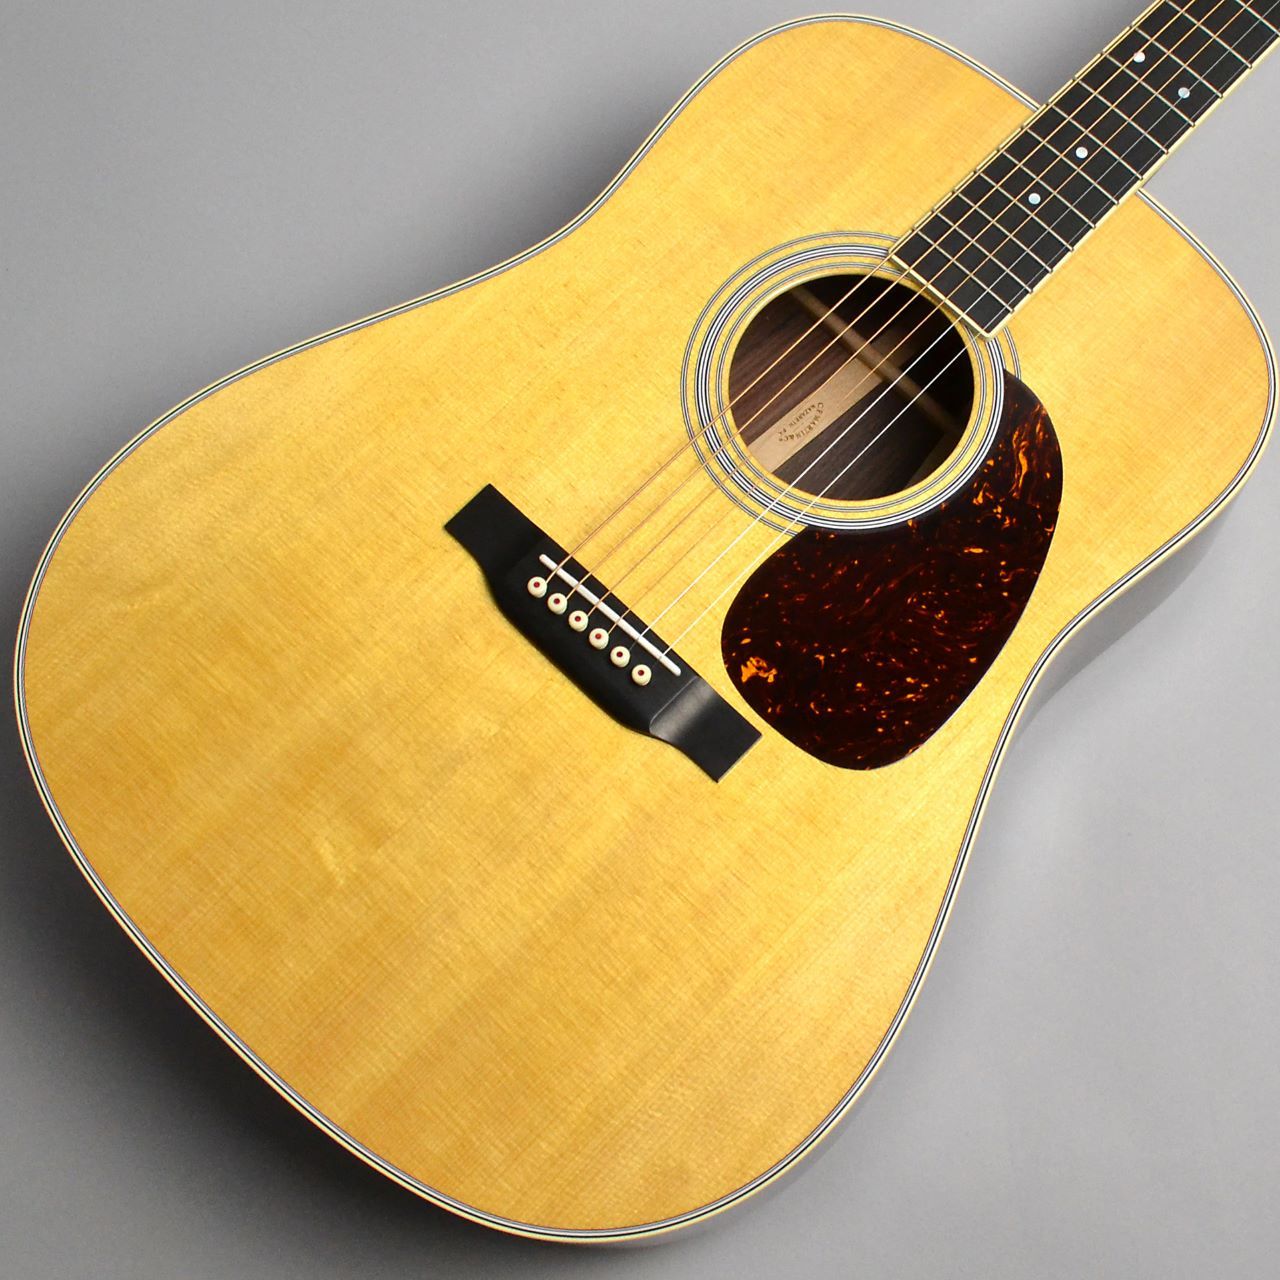 アコースティックギター【Martin】D-35 Standard